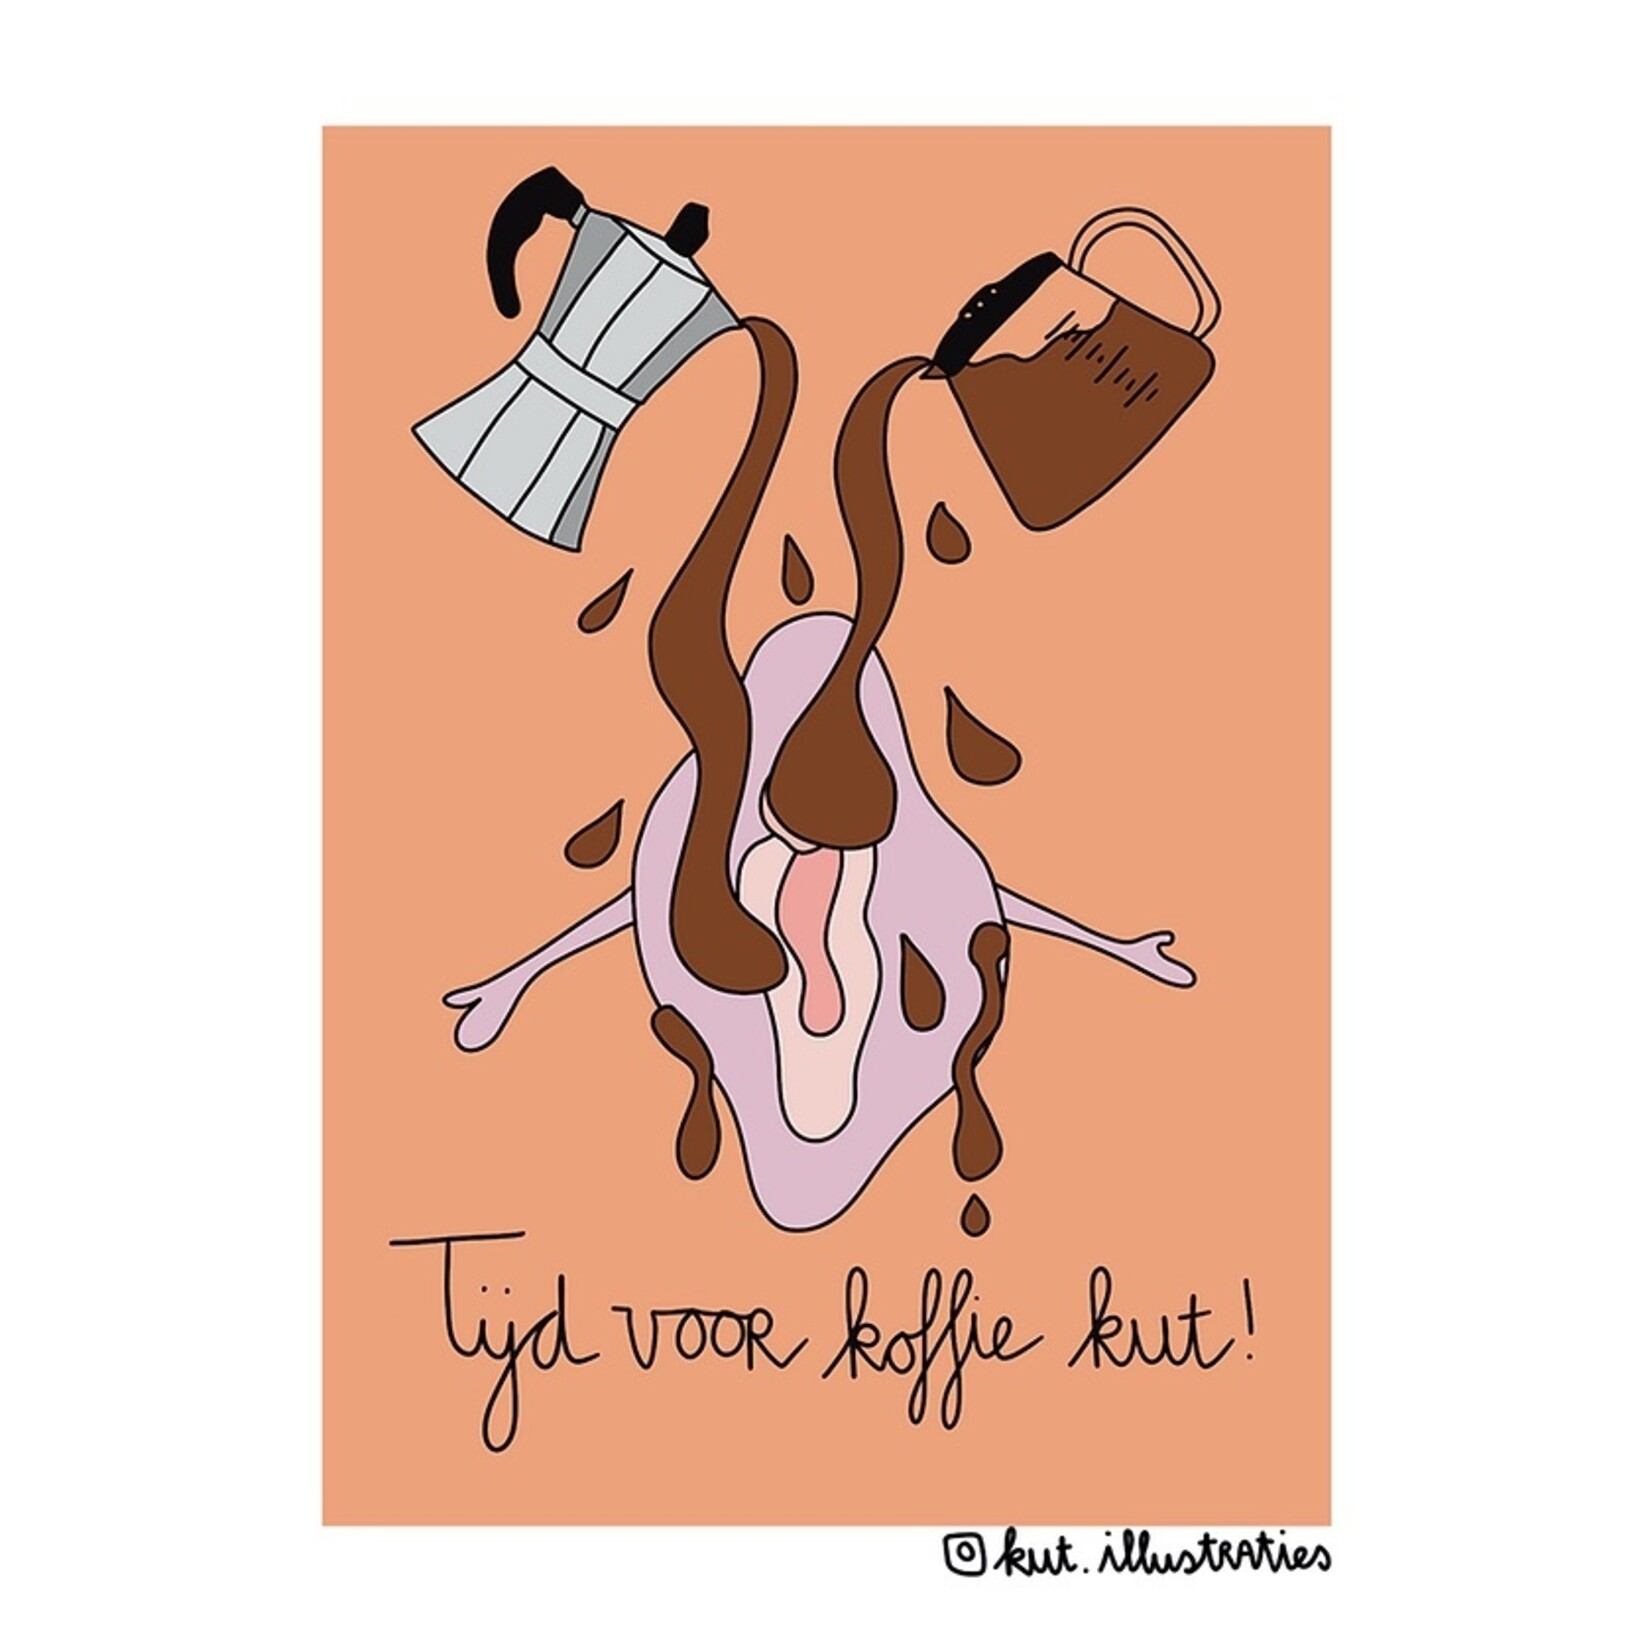 Kut Illustraties Kut Illustraties - Kaart Tijd voor koffie kut!